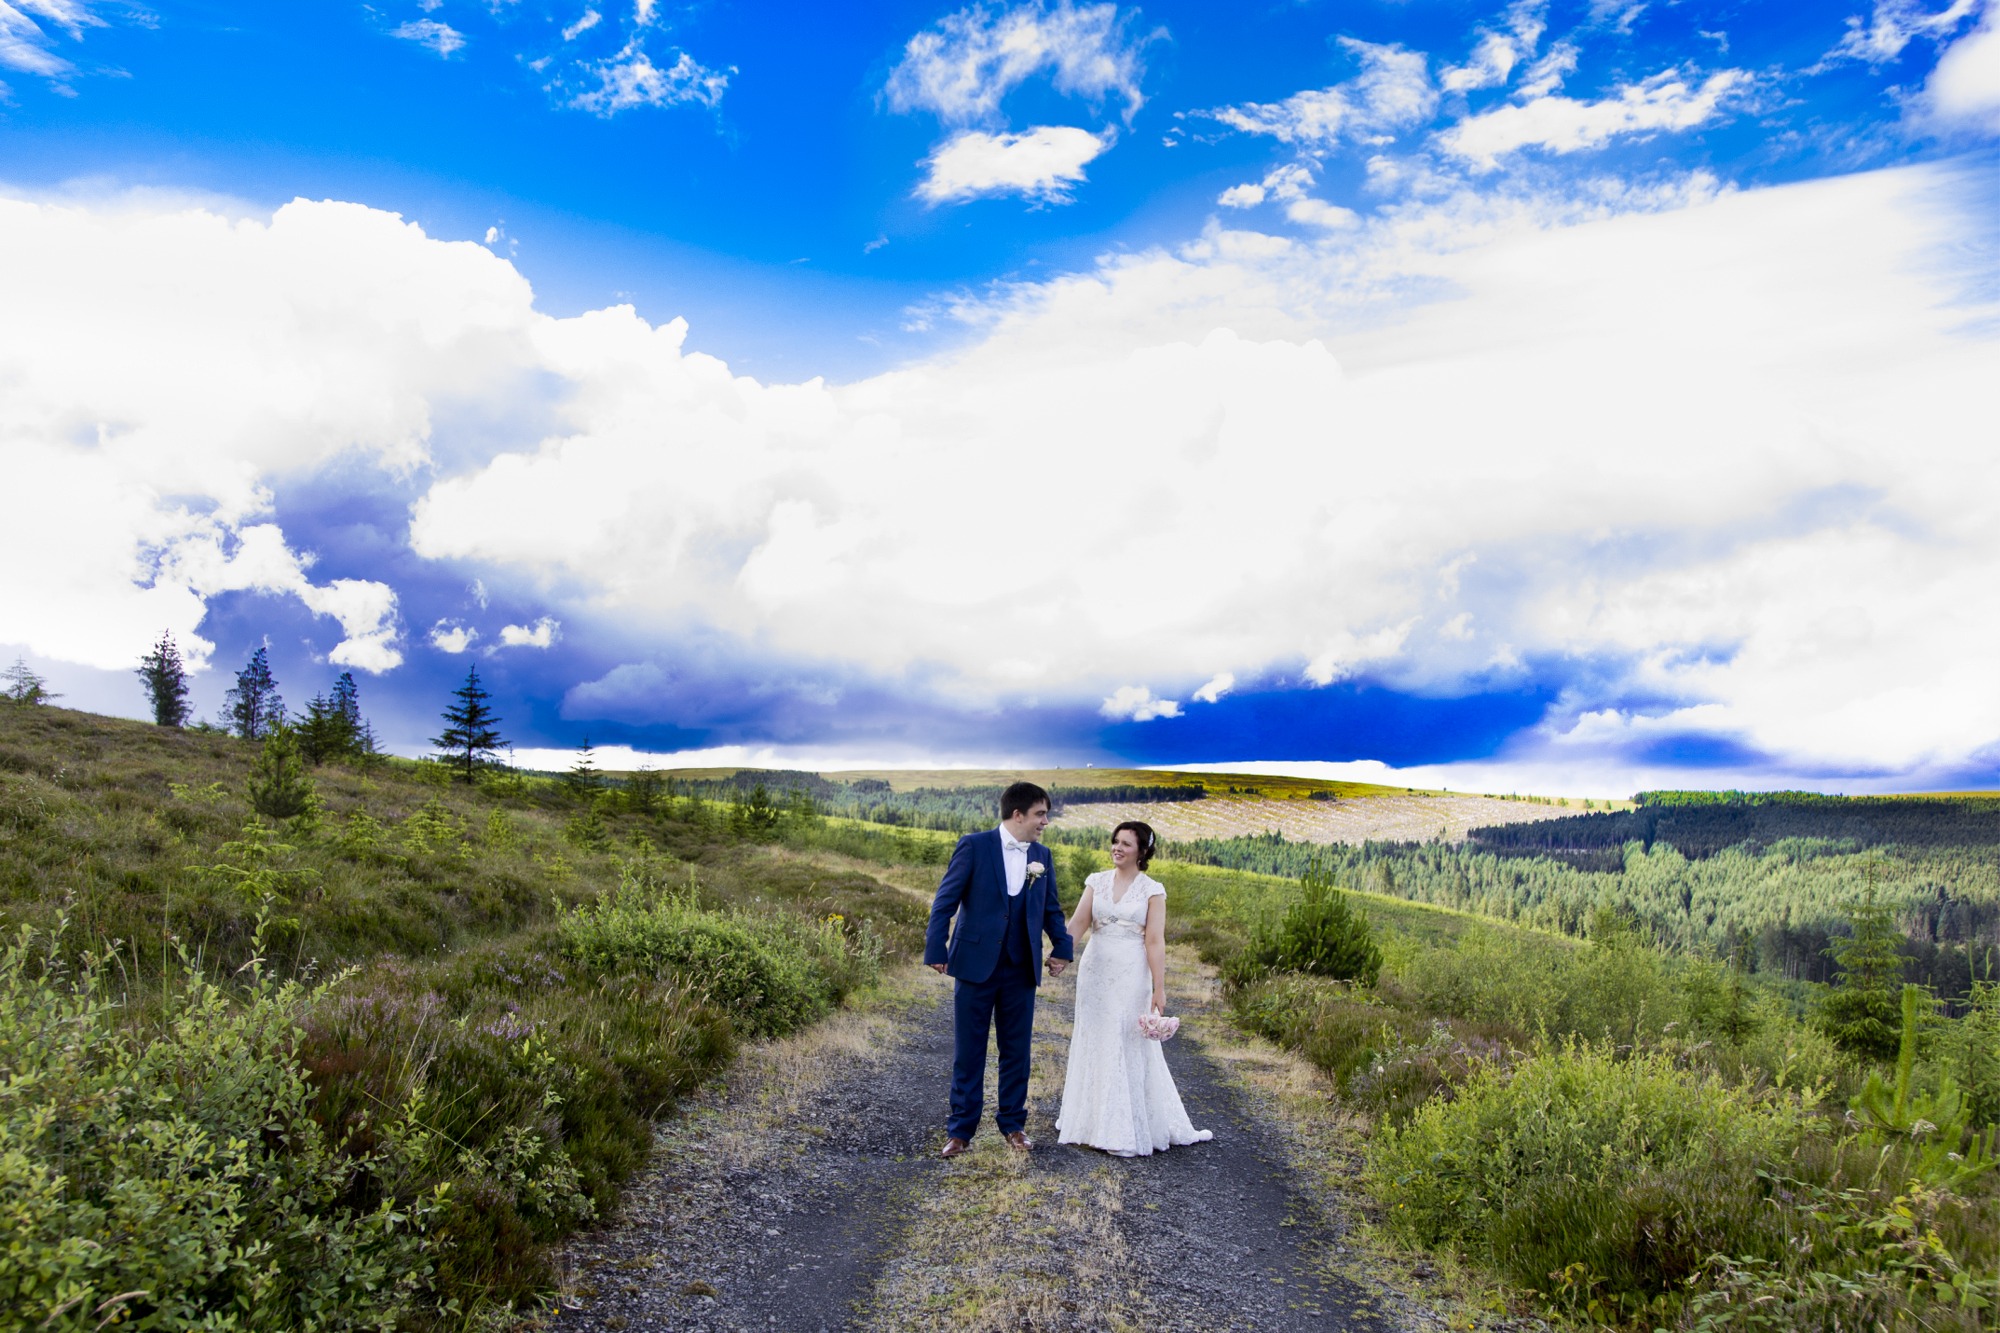 Wedding ceremony photographs by Wedding Photography Laois, Ireland